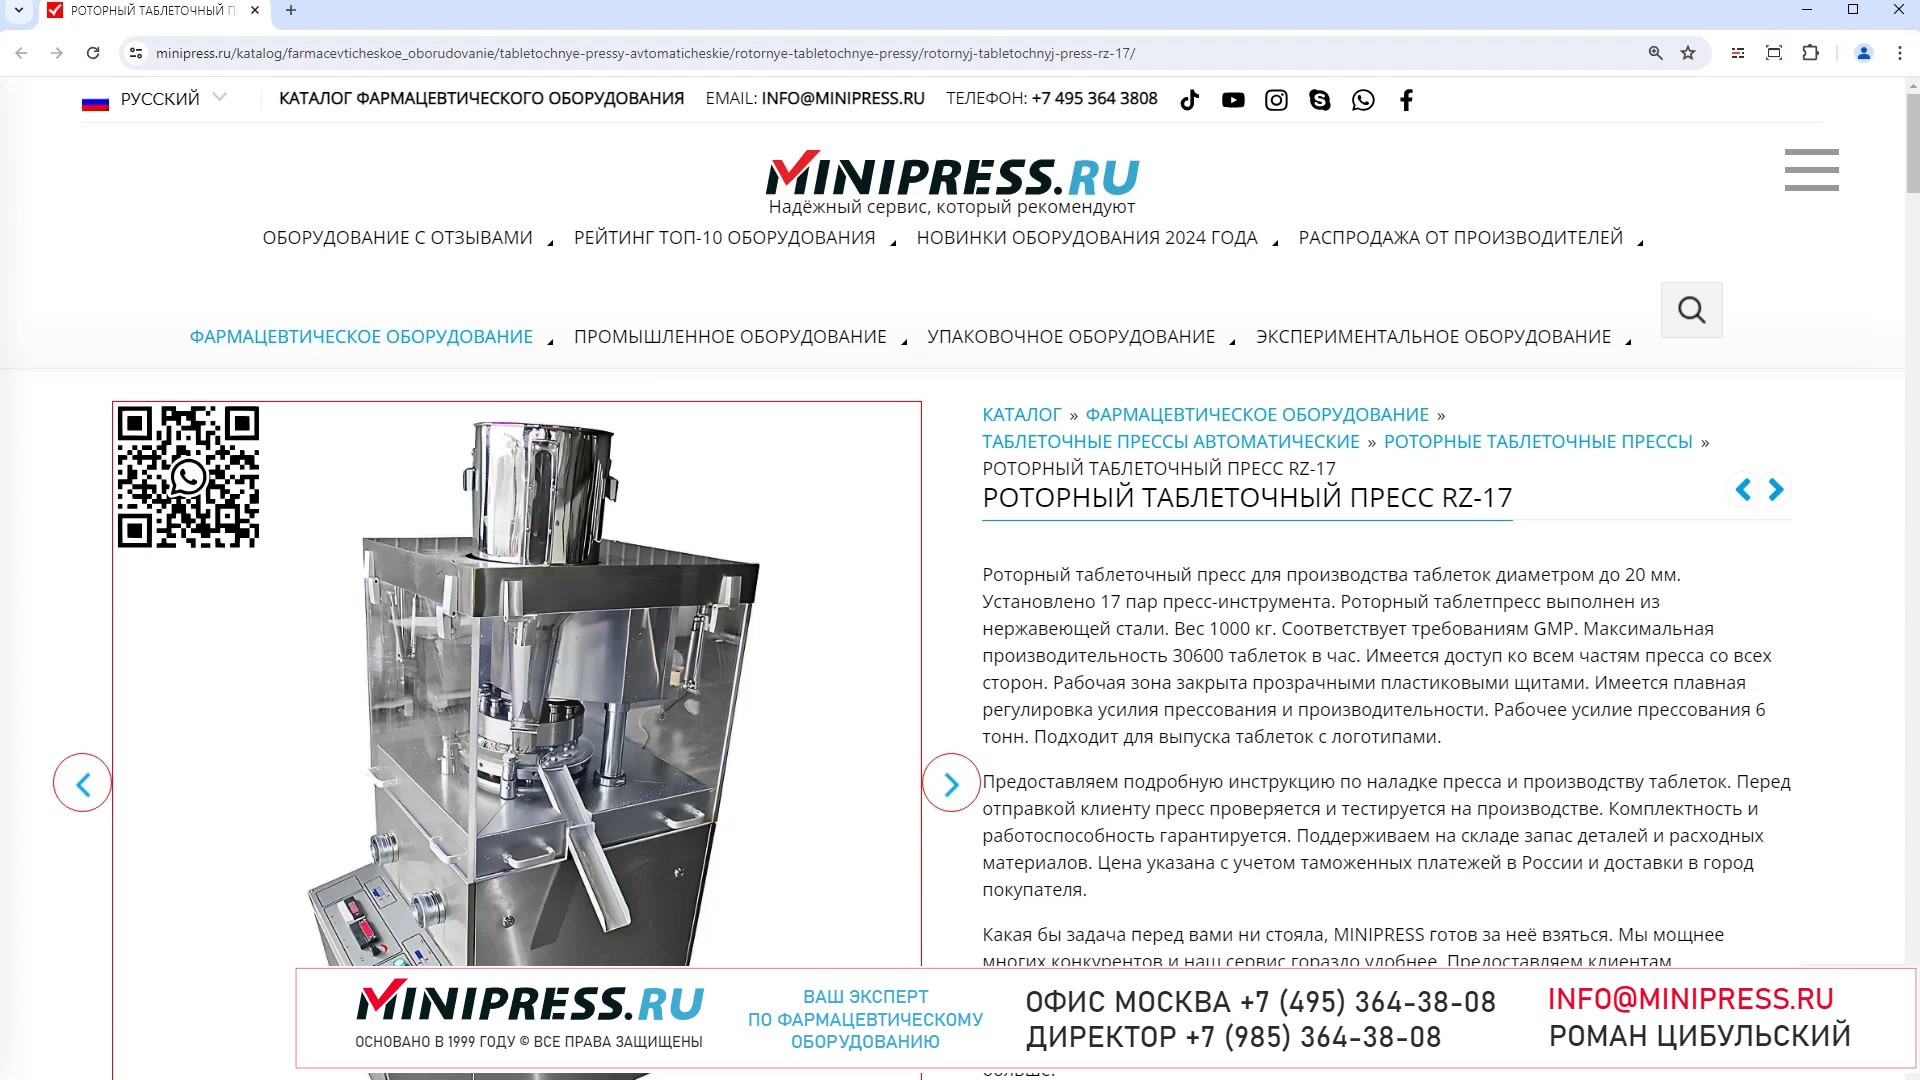 Minipress.ru Роторный таблеточный пресс RZ-17